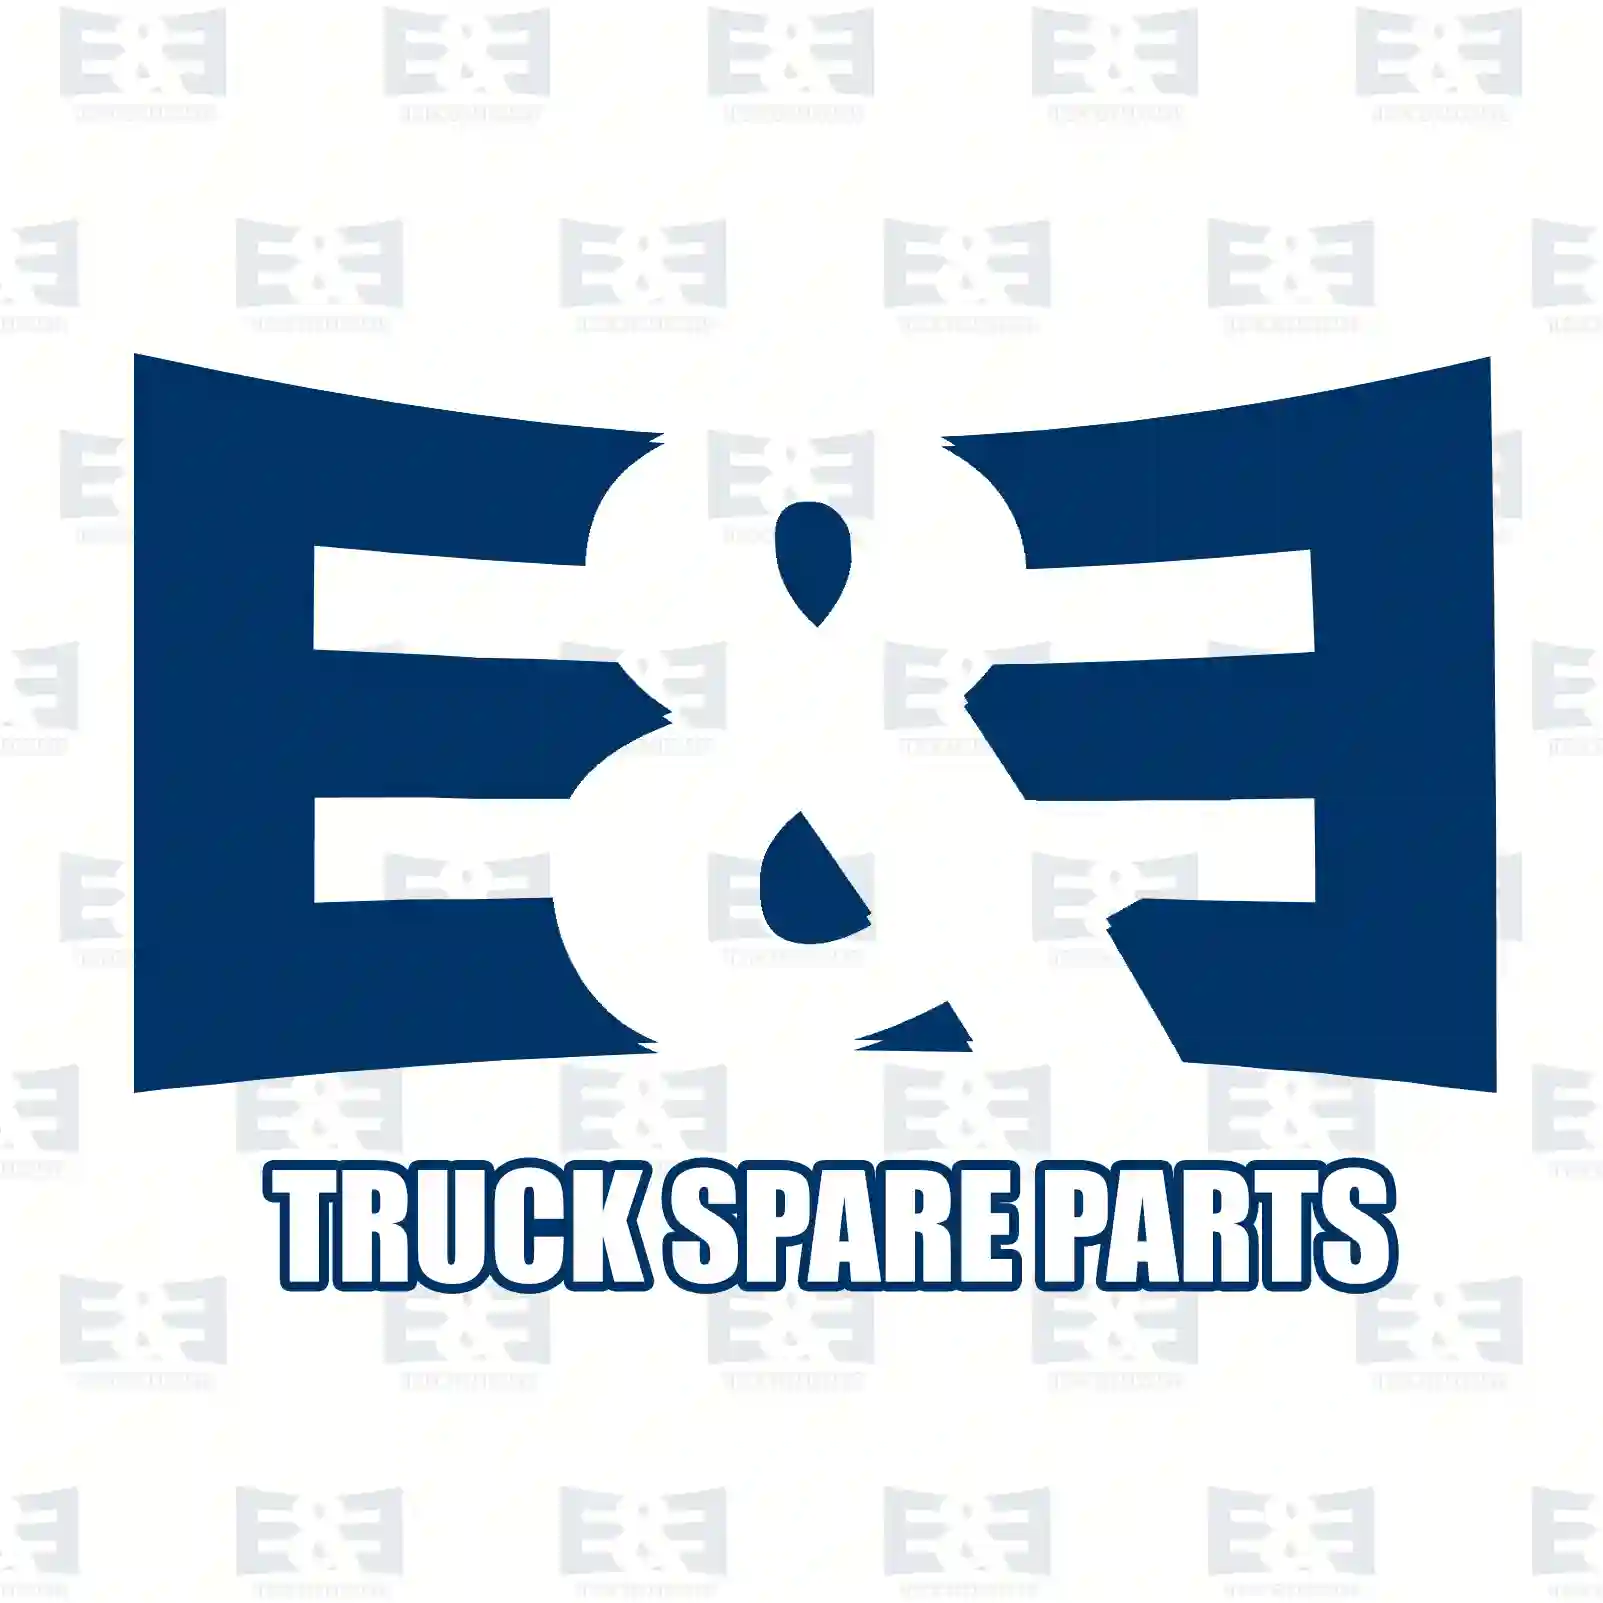 Propeller shaft, 2E2276874, 7401067720, 10677 ||  2E2276874 E&E Truck Spare Parts | Truck Spare Parts, Auotomotive Spare Parts Propeller shaft, 2E2276874, 7401067720, 10677 ||  2E2276874 E&E Truck Spare Parts | Truck Spare Parts, Auotomotive Spare Parts